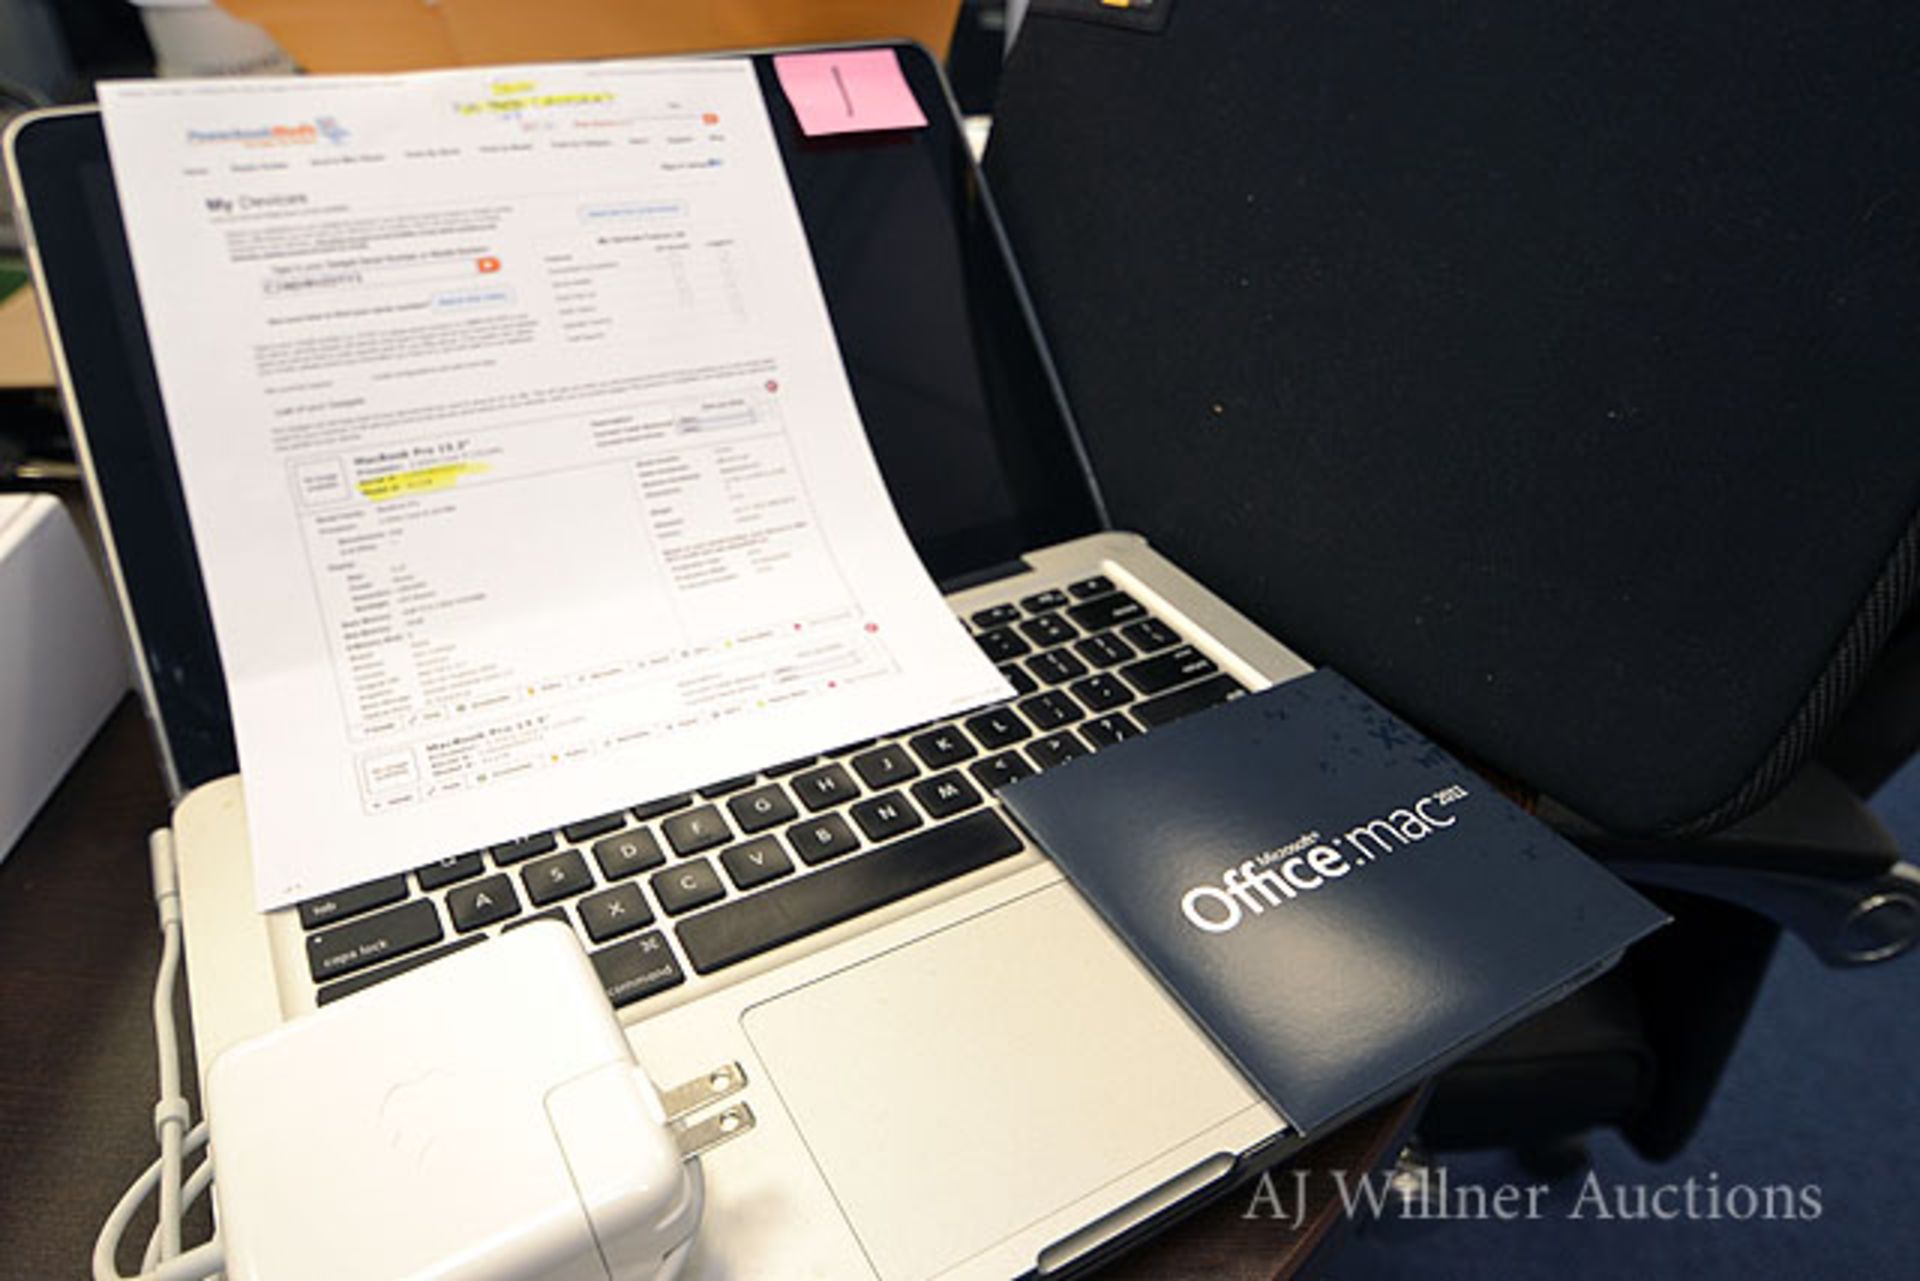 MacBook Pro 13.3” Model A1278, 2.5 GHz Core i5 (3210M), 500 GB